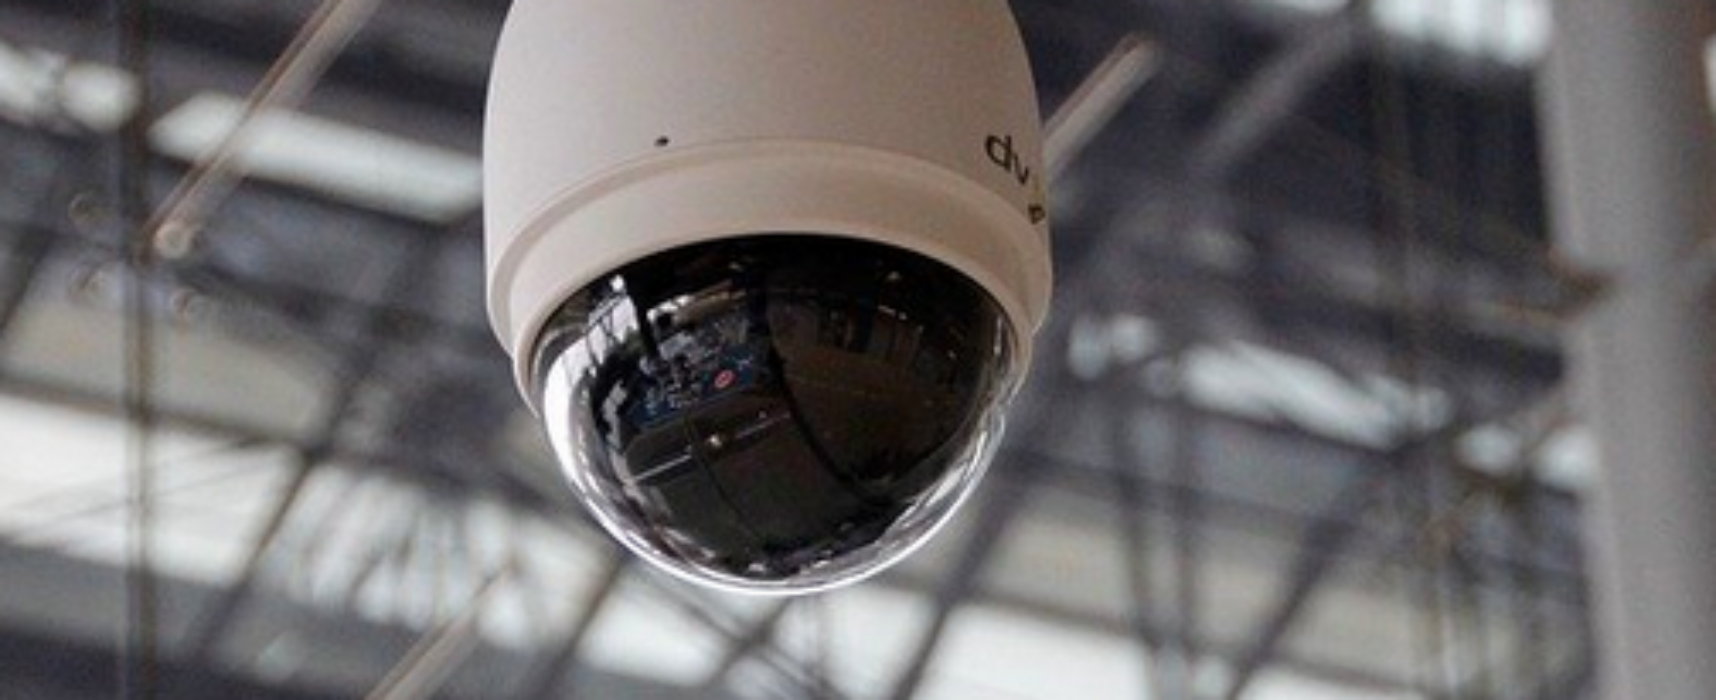 Thusis führt Video-Überwachung ein